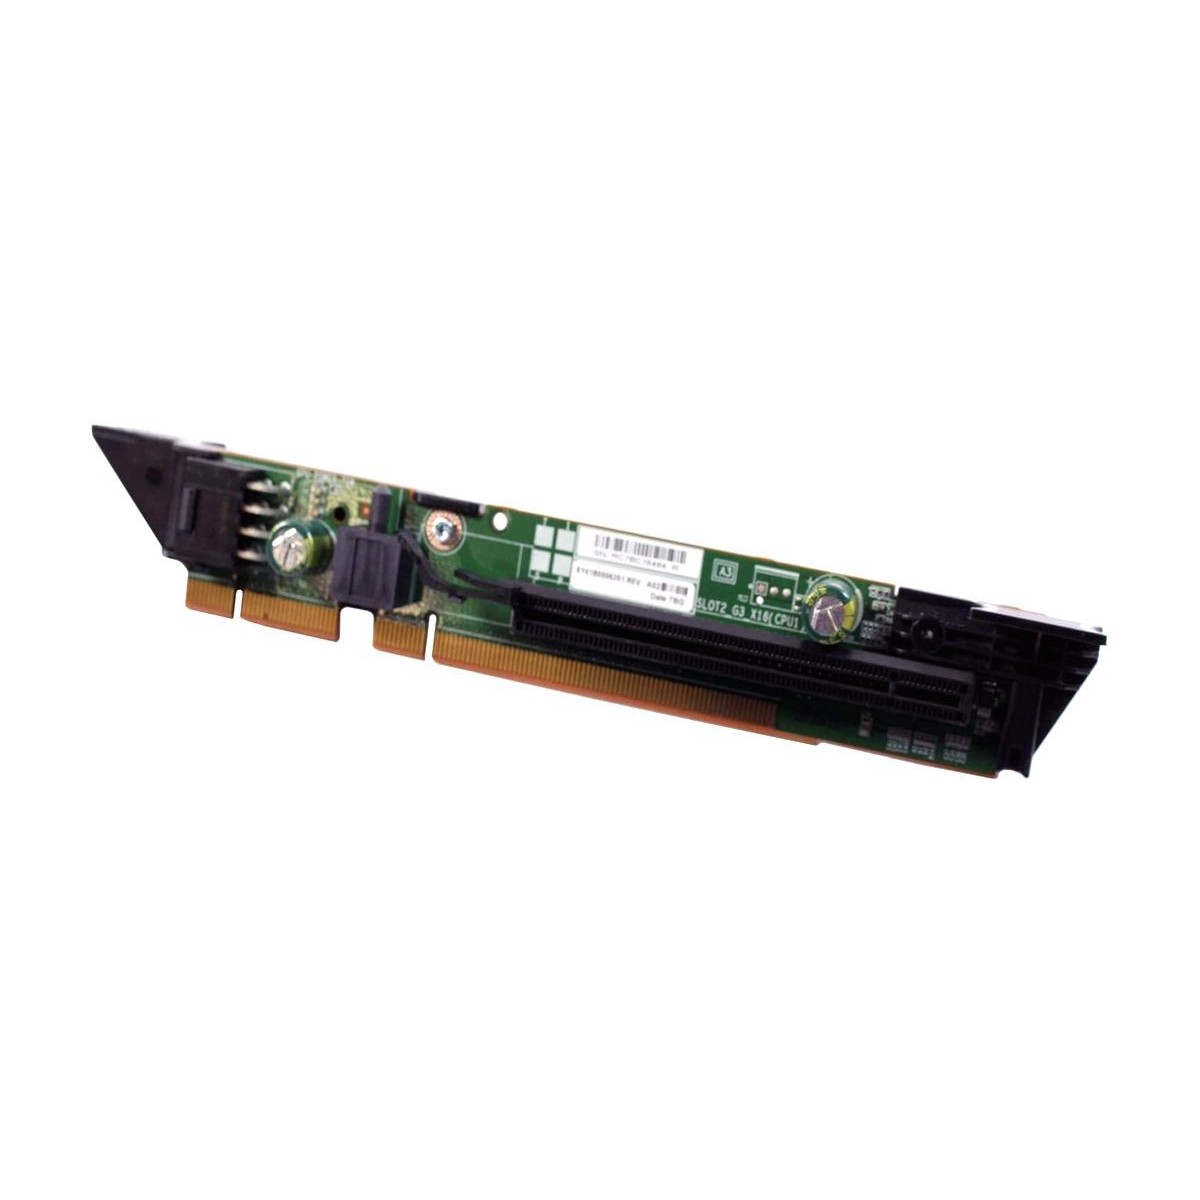 RISER CARD DELL PE R630 PCI-E x16 SLOT2 G3 06R1H1